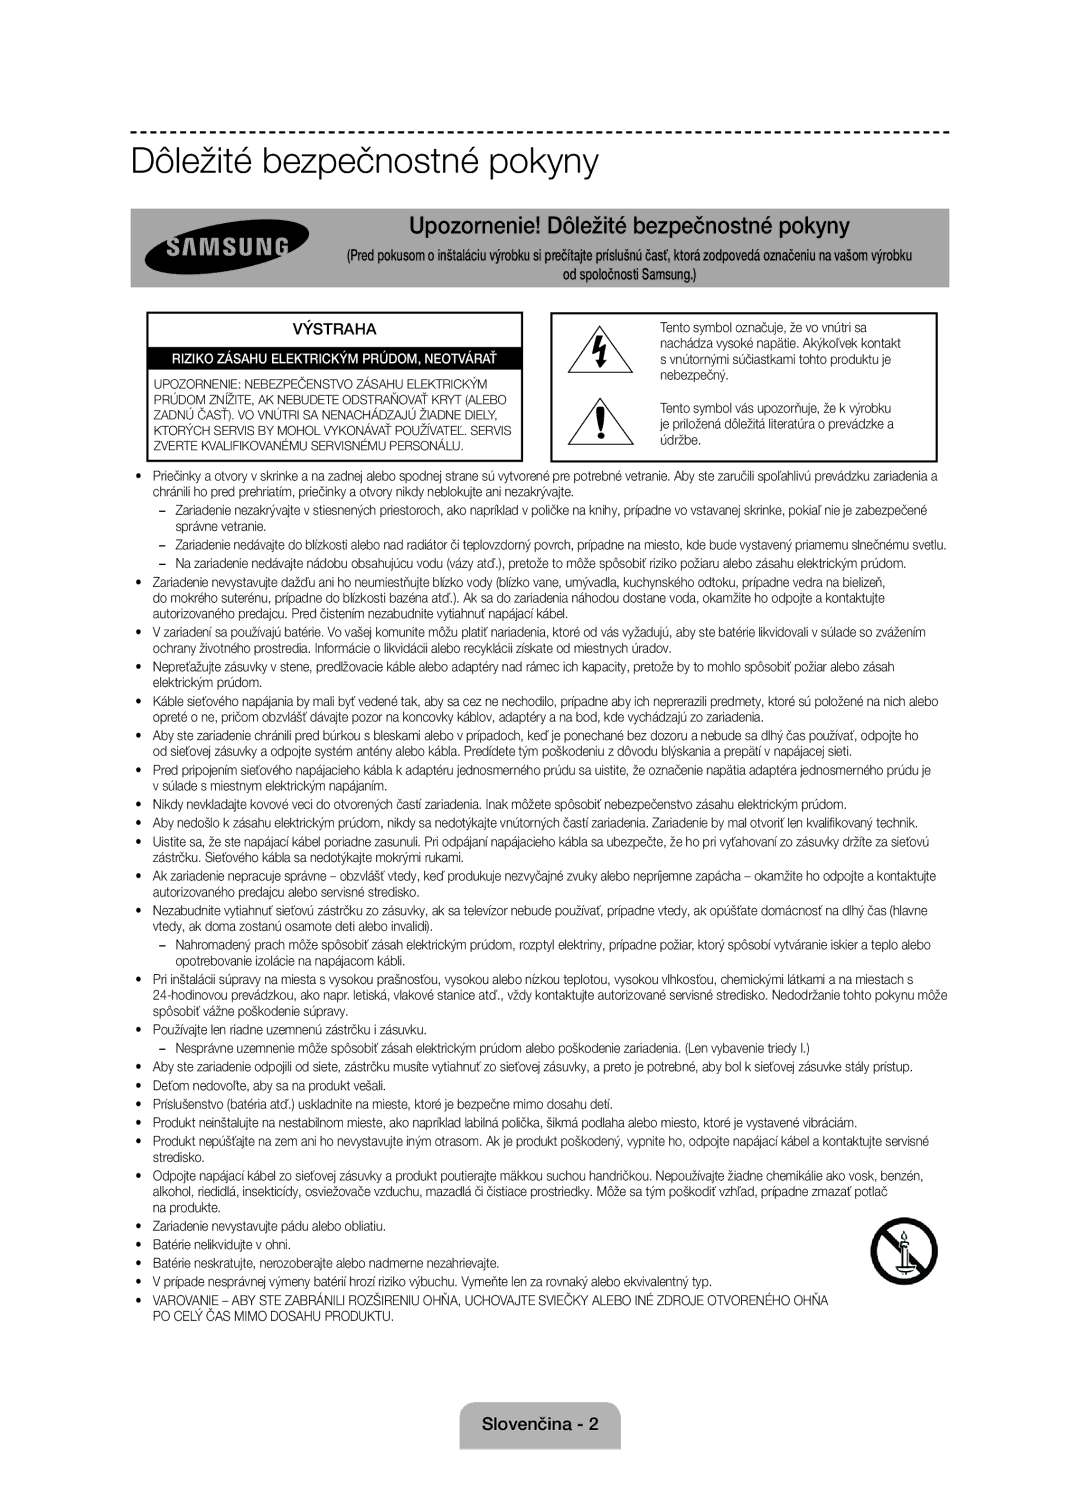 Samsung UE60J6100AWXBT, UE55J6100AWXZF, UE50J6100AWXZF, UE55J6100AWXBT manual Dôležité bezpečnostné pokyny, Slovenčina 